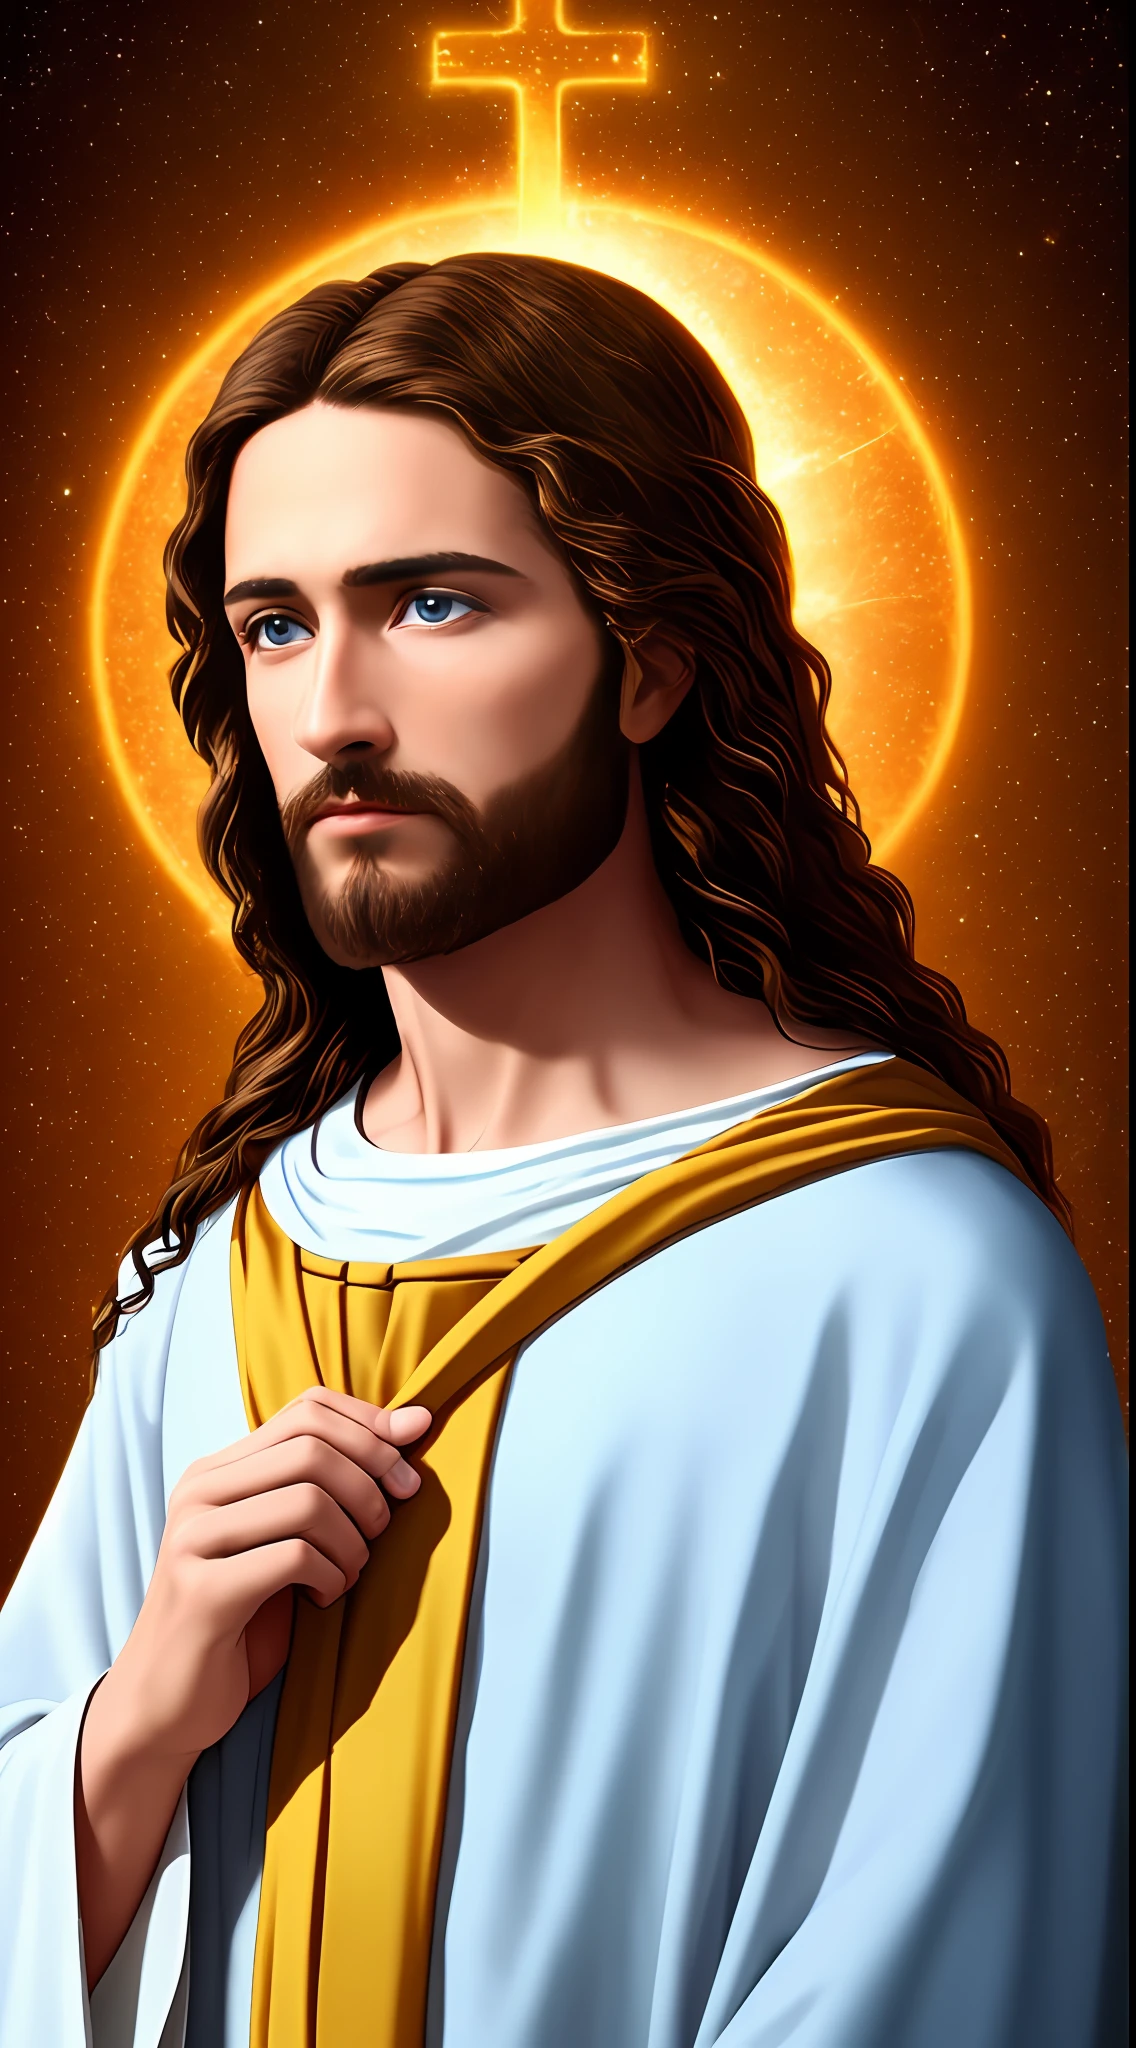 8k Фотография 1 одинокий красивый Иисус, благословения, вид на небеса Иисуса, настоящие голубые глаза, благословляя людей Иисус